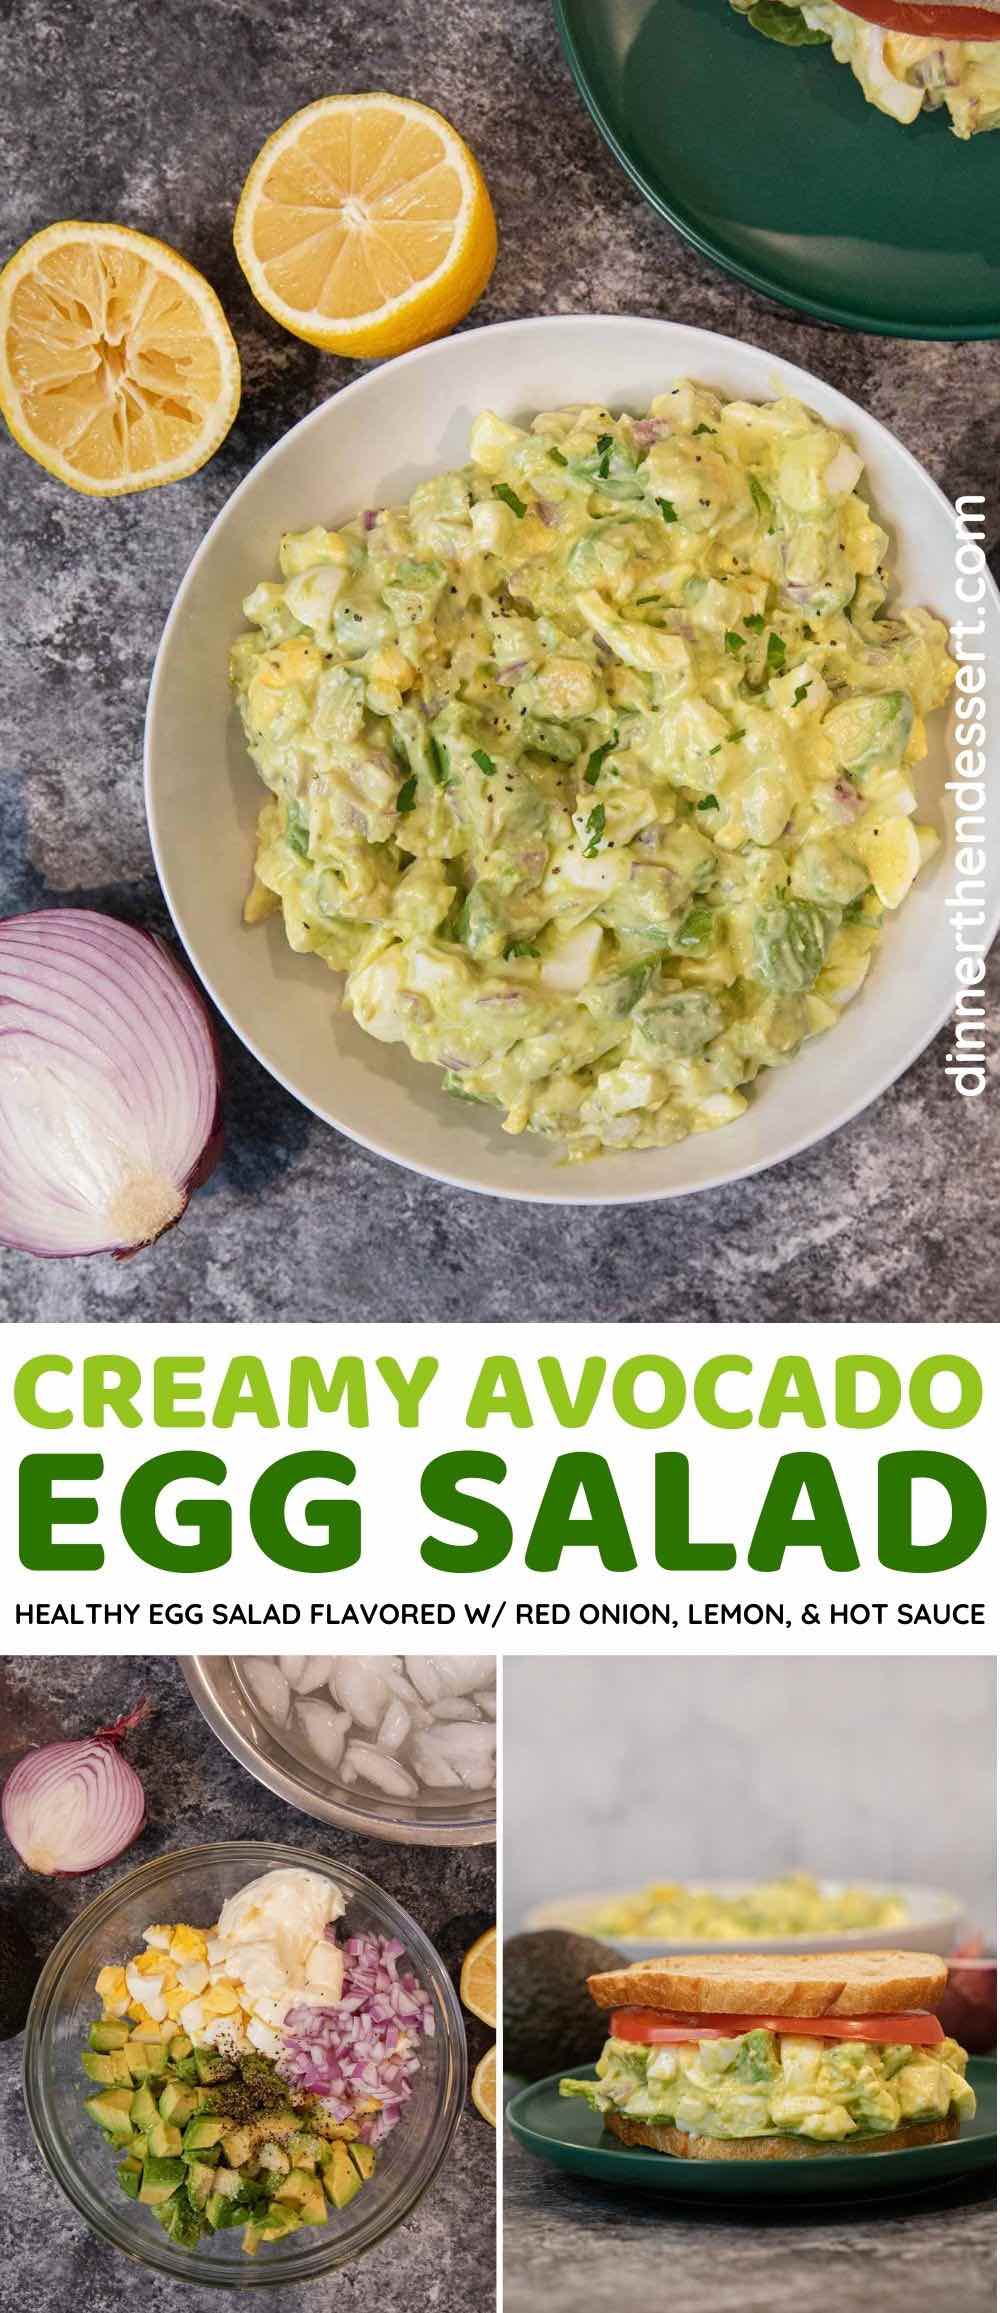 https://dinnerthendessert.com/wp-content/uploads/2021/02/Avocado-Egg-Salad-L.jpg